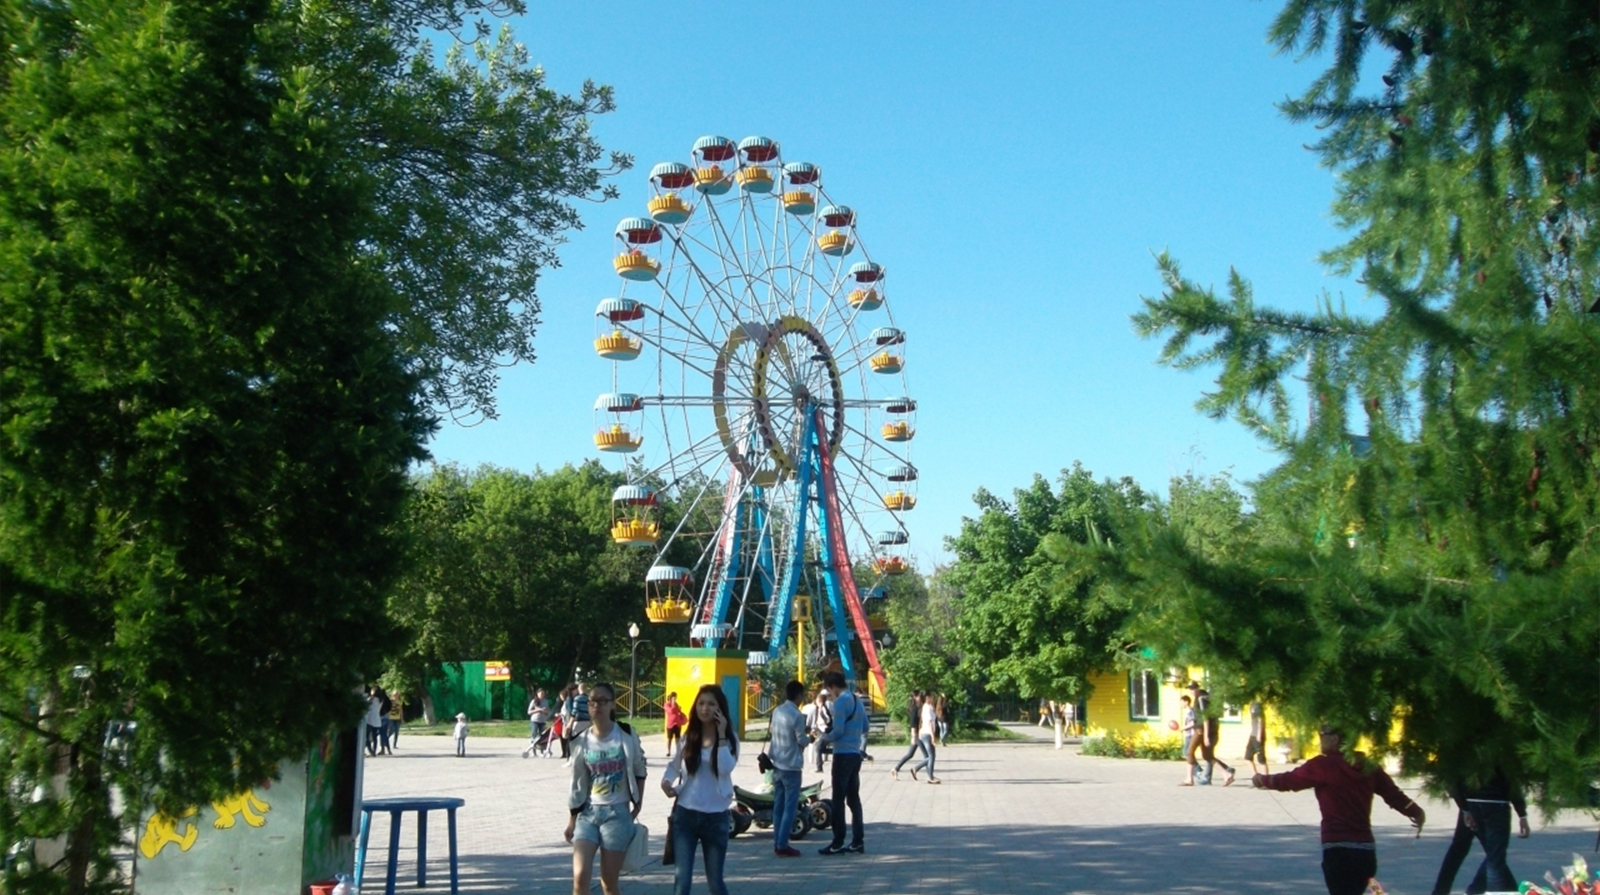 <p>Городской парк культуры и  отдыха является старейшим парком в Республике Казахстан.</p>
<p>Городской парк был заложен в 1840 году.</p>
<p>1862 году в парке побывал Лев Николаевич Толстой.</p>
<p>В 1884 году было положено начало новой традиции – большие городские праздники отмечать в парке.</p>
<p>В июле 1891 года был дан концерт, где выступал молодой Федор Шаляпин.</p>
<p>В 1923 году здесь писались поэтические строки классика казахской литературы С.Сейфуллина.</p>
<p>В парке в разные годы бывали М.А.Шолохов, А.Толстой, Х.Есенжанов, Т.Жароков, С.Муканов, Д.Молдагалиев и многие другие выдающиеся деятели литературы и искусства.</p>
<p>С 1925 года здесь стали отмечать не только общенародные праздники, но и профессиональные, стали проводиться спортивные соревнования, выставки, слеты ударников и вскоре Казенный сад стал Профсоюзным.</p>
<p>В 1935 году преобразован  в Уральский  городской парк культуры и отдыха им. С.М.Кирова.</p>
<p>В 1970 году парк становится структурным подразделением городского отдела культуры.</p>
<p>В 2008 году после капитального ремонта городской парк посетил  Президент Республики Казахстан Нурсултан Абишевич Назарбаев.</p>
<p>3 августа 2009 года на основании решения Акимата города Уральска и Городского маслихата  был переименован в «Государственное  Коммунальное  Казенное  Предприятие    «Городской парк  культуры и отдыха».</p>
<p>В  2012 году  на основании решения Акимата города Уральска и Городского маслихата   был переименован в «Государственное  Коммунальное Предприятие  «Городской парк  культуры и отдыха».</p>
<p>В 2015 году городскому парку культуры и отдыха исполнилось 175 лет.</p>
<p>И сегодня парк по-прежнему является любимым местом отдыха горожан и гостей города, здесь проводятся  Проводы Зимы, Наурыз, День Победы, День Защиты детей, Сабантуй, Праздник Нептуна, профессиональные и национальные  праздники.</p>
<p>Площадь парка составляет 24,2289 га.</p>
<p>В парке 4000 деревьев, и среди них – исторические реликтовые образцы, которым более 150 лет – это 24 дуба и 7 сосен. Толщина стволов дубов превышает 80 сантиметров, высота 20-26 метров, сосны в диаметре 52 см, высота достигает 30 метров. Всего в парке насчитывается 23 вида деревьев, 12 видов кустарников.</p>
<p>В настоящее время  в парке работают 2 аттракциона: «Колесо обозрения» и «Колокольчик».  Общее число  посетителей парка  в среднем  более 750 000 человек.</p>
<p>Проведено много работ по улучшению качества материально-технической базы ГКП «Городской парк культуры и отдыха».</p>
<p>А именно:</p>
<p>- В 2011 году открыли музыкальный фонтан «Торнадо».</p>
<p>- В 2015 году построили торговые места быстрого  питания  - Фудкорт.</p>
<p>-  В 2016 году построили спортивную площадку «WorkOut» .</p>
<p>- В сентябре  2017 года на месте старого фонтана по главной аллее были установлены скульптуры девушки и джигита  из сухих деревьев.</p>